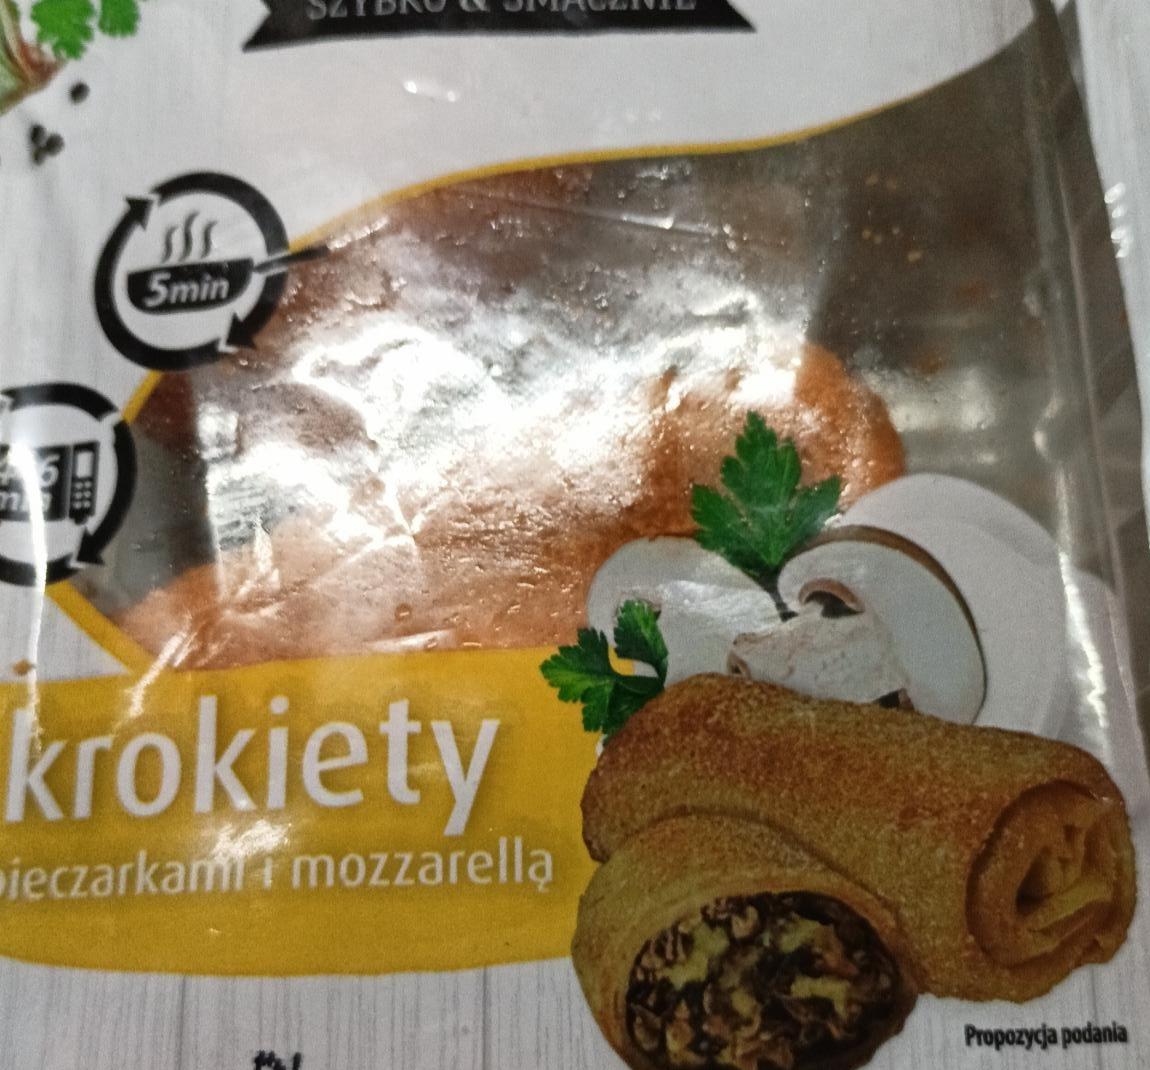 Fotografie - Krokiety z pieczarkami i mozzarellą SmakMAK